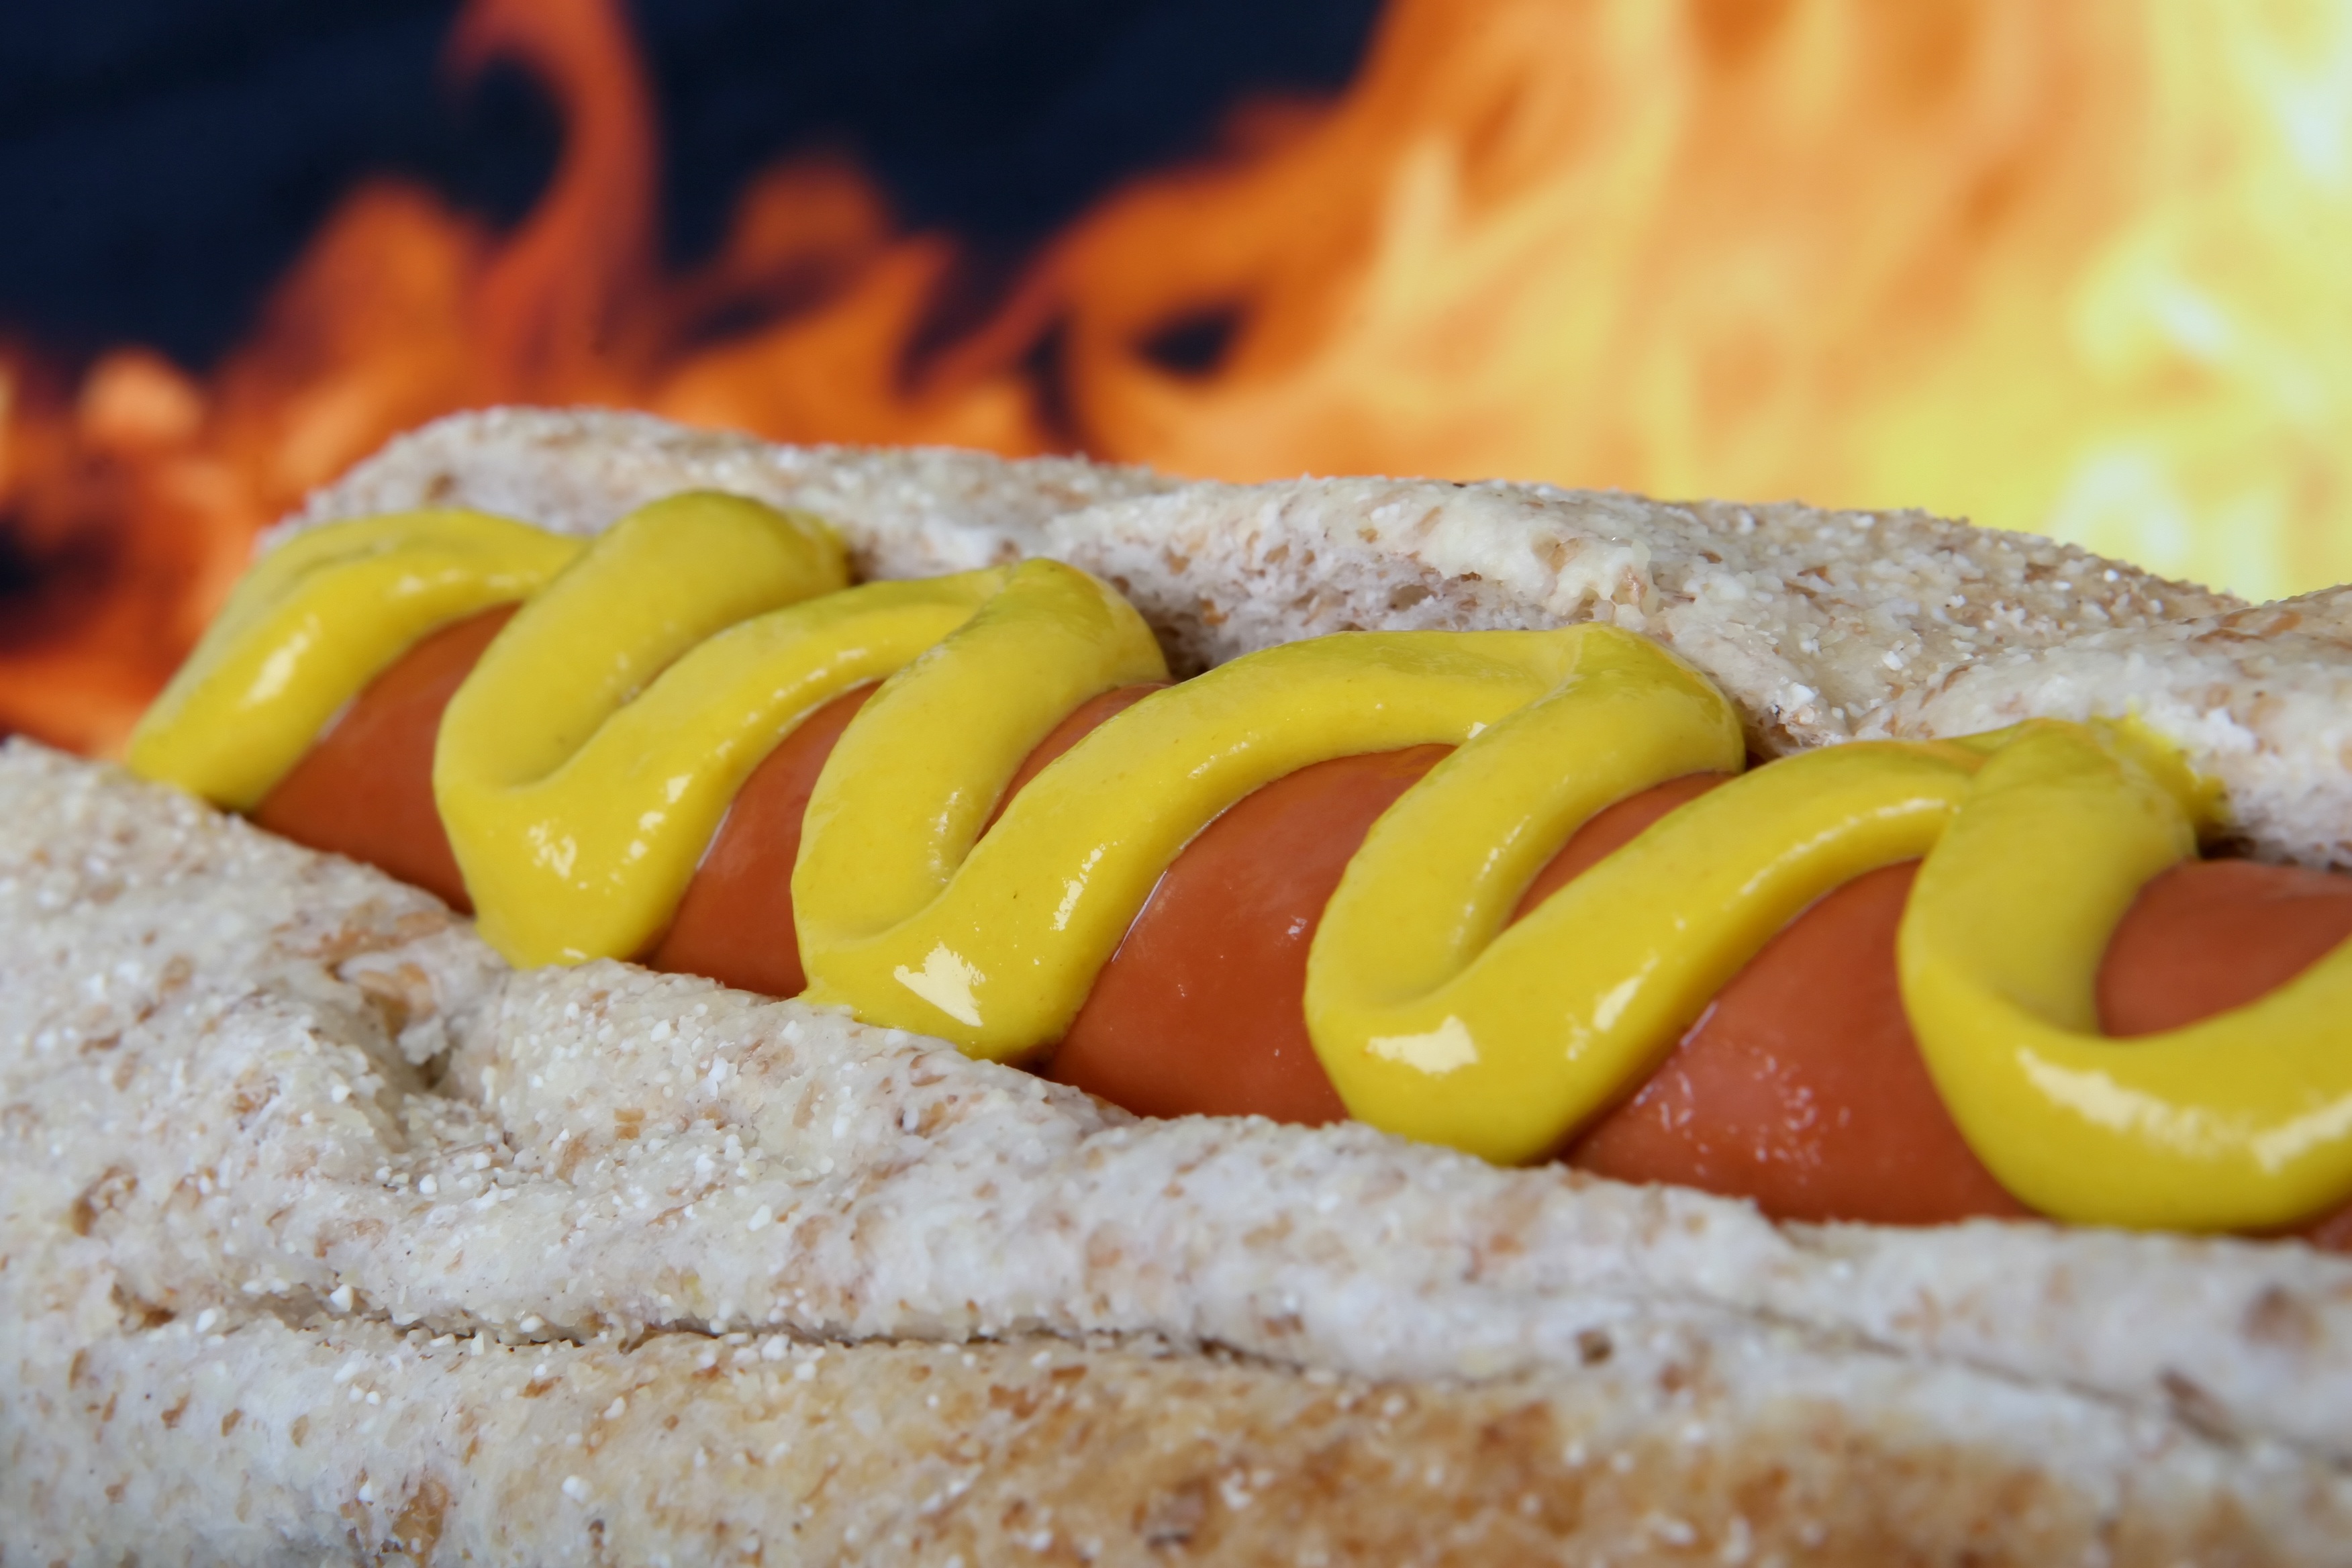 Hot dog photo